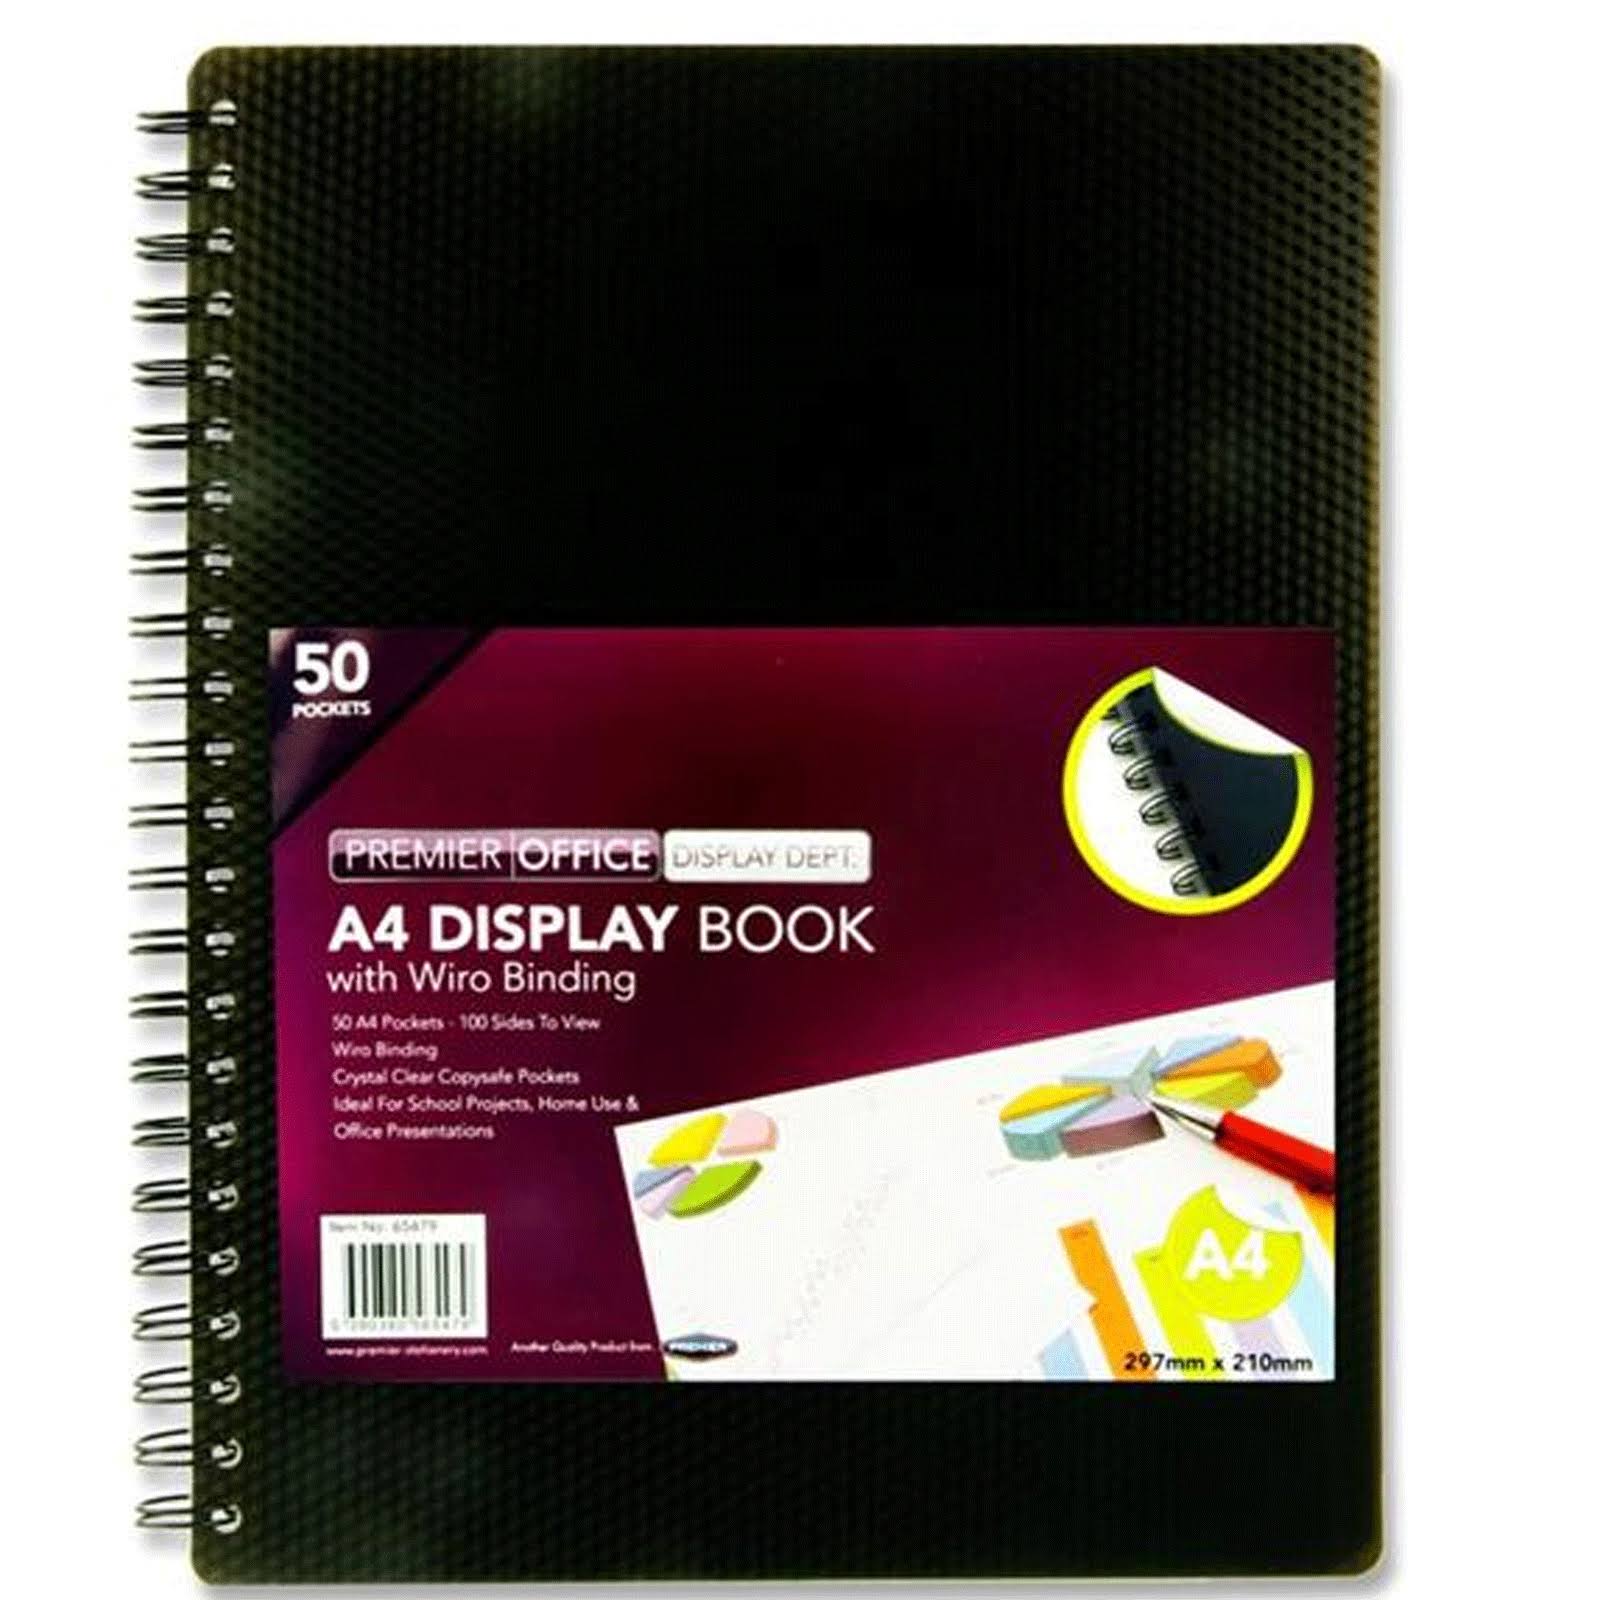 Premier Depot Display Book - 50 Pocket, A4, Spiral